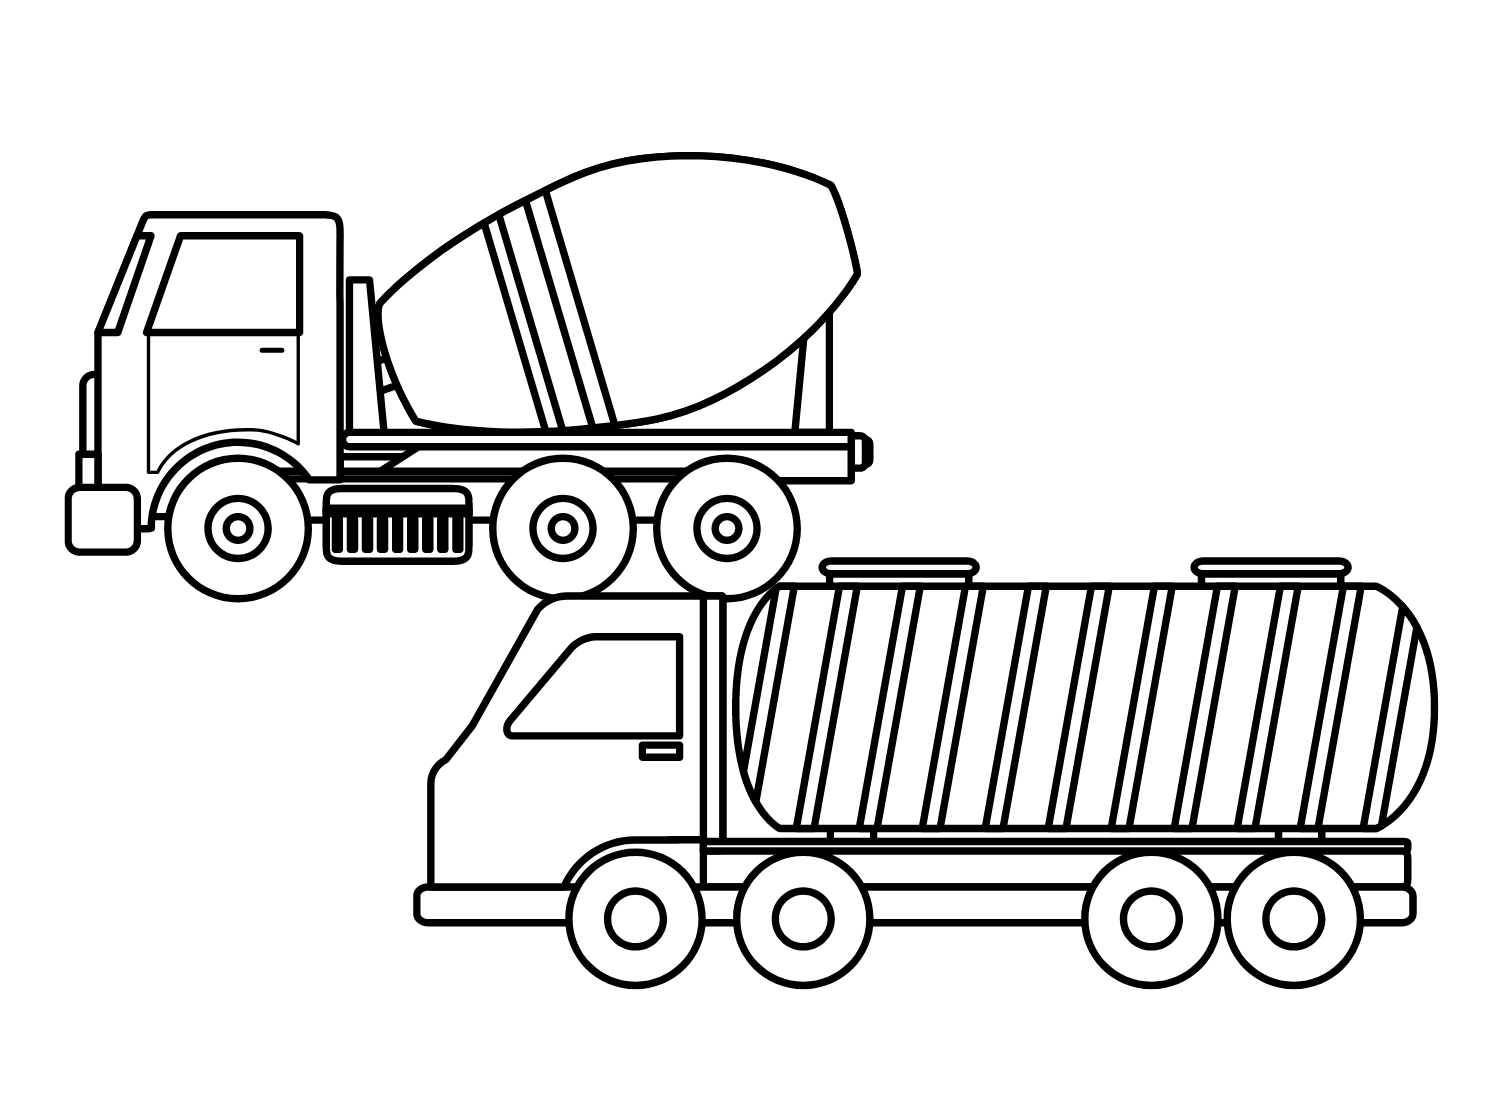 油罐车的混凝土卡车与油罐车